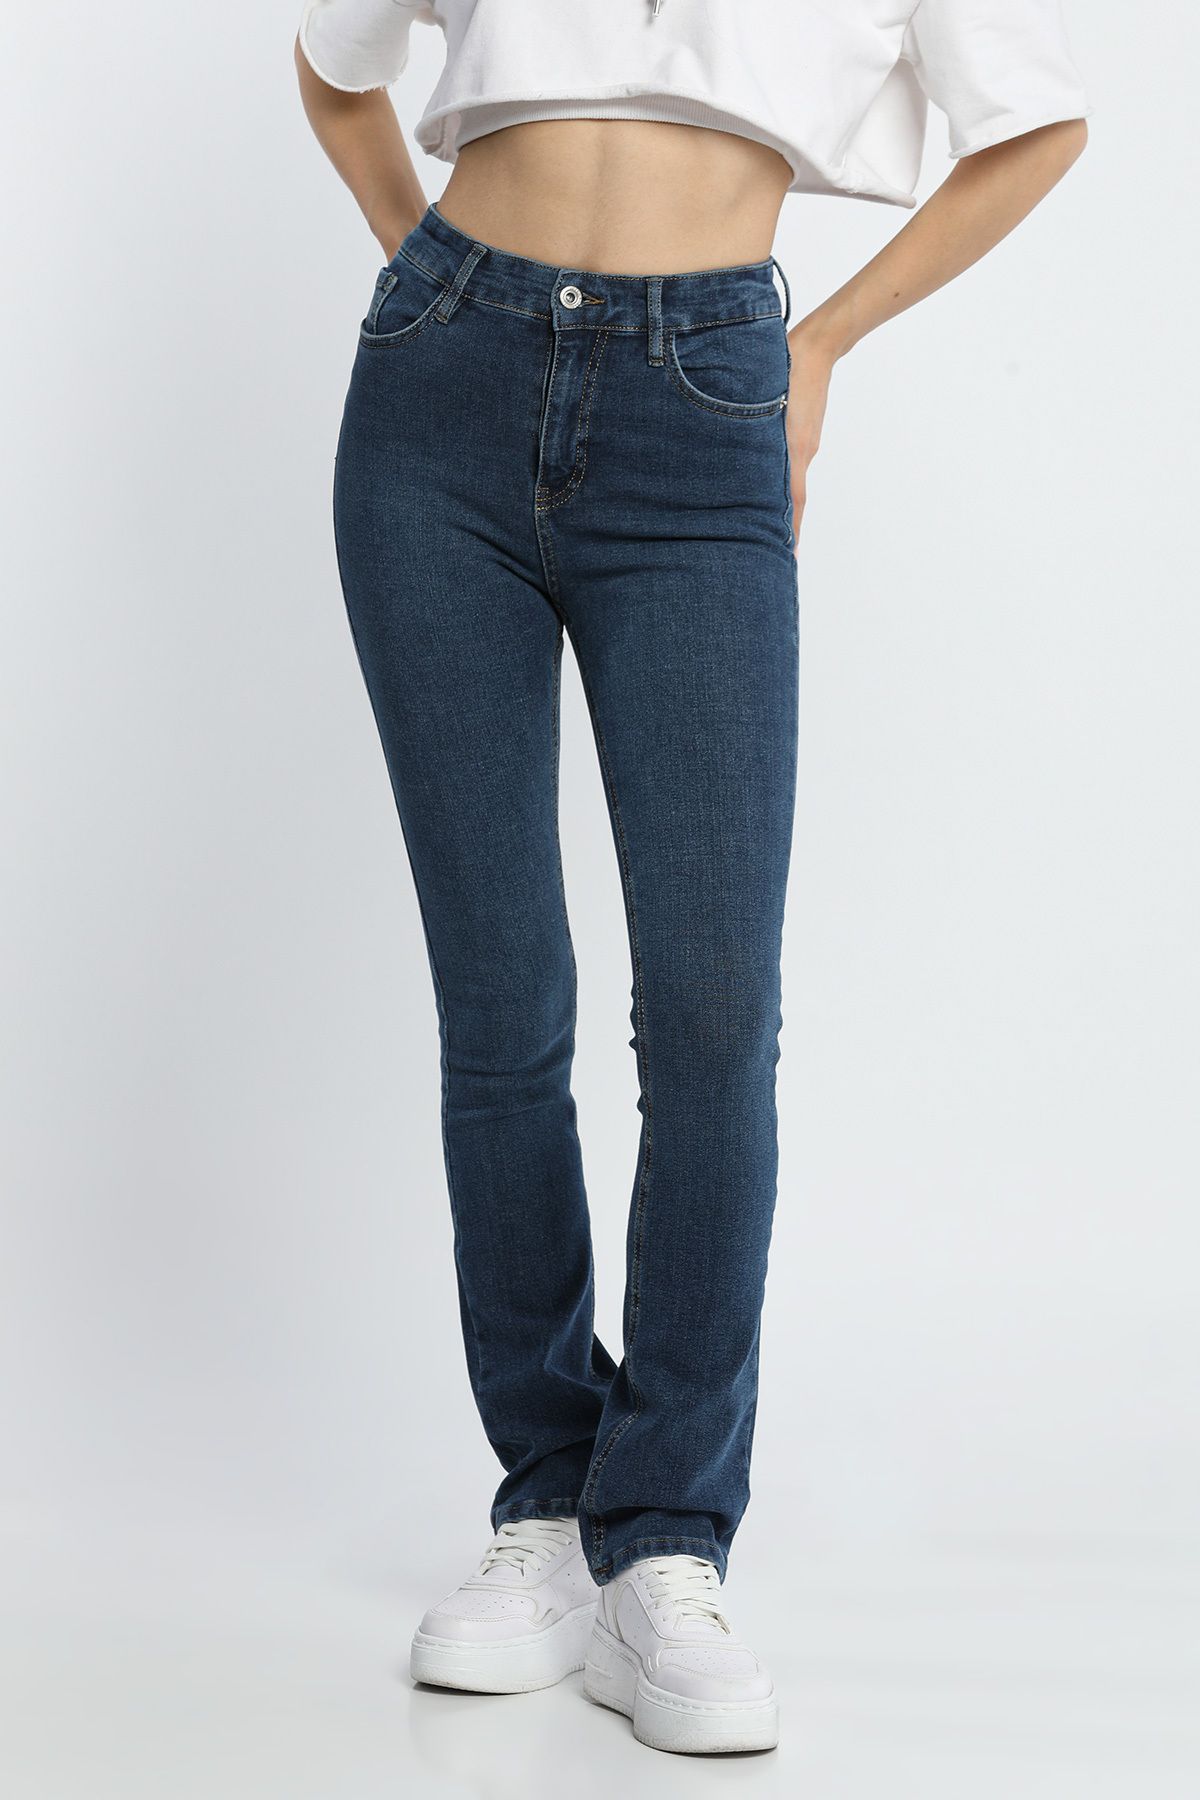 Julude Lacivert Yüksek Bel İspanyol Paça Jean Kot Pantolon Kadın Modası